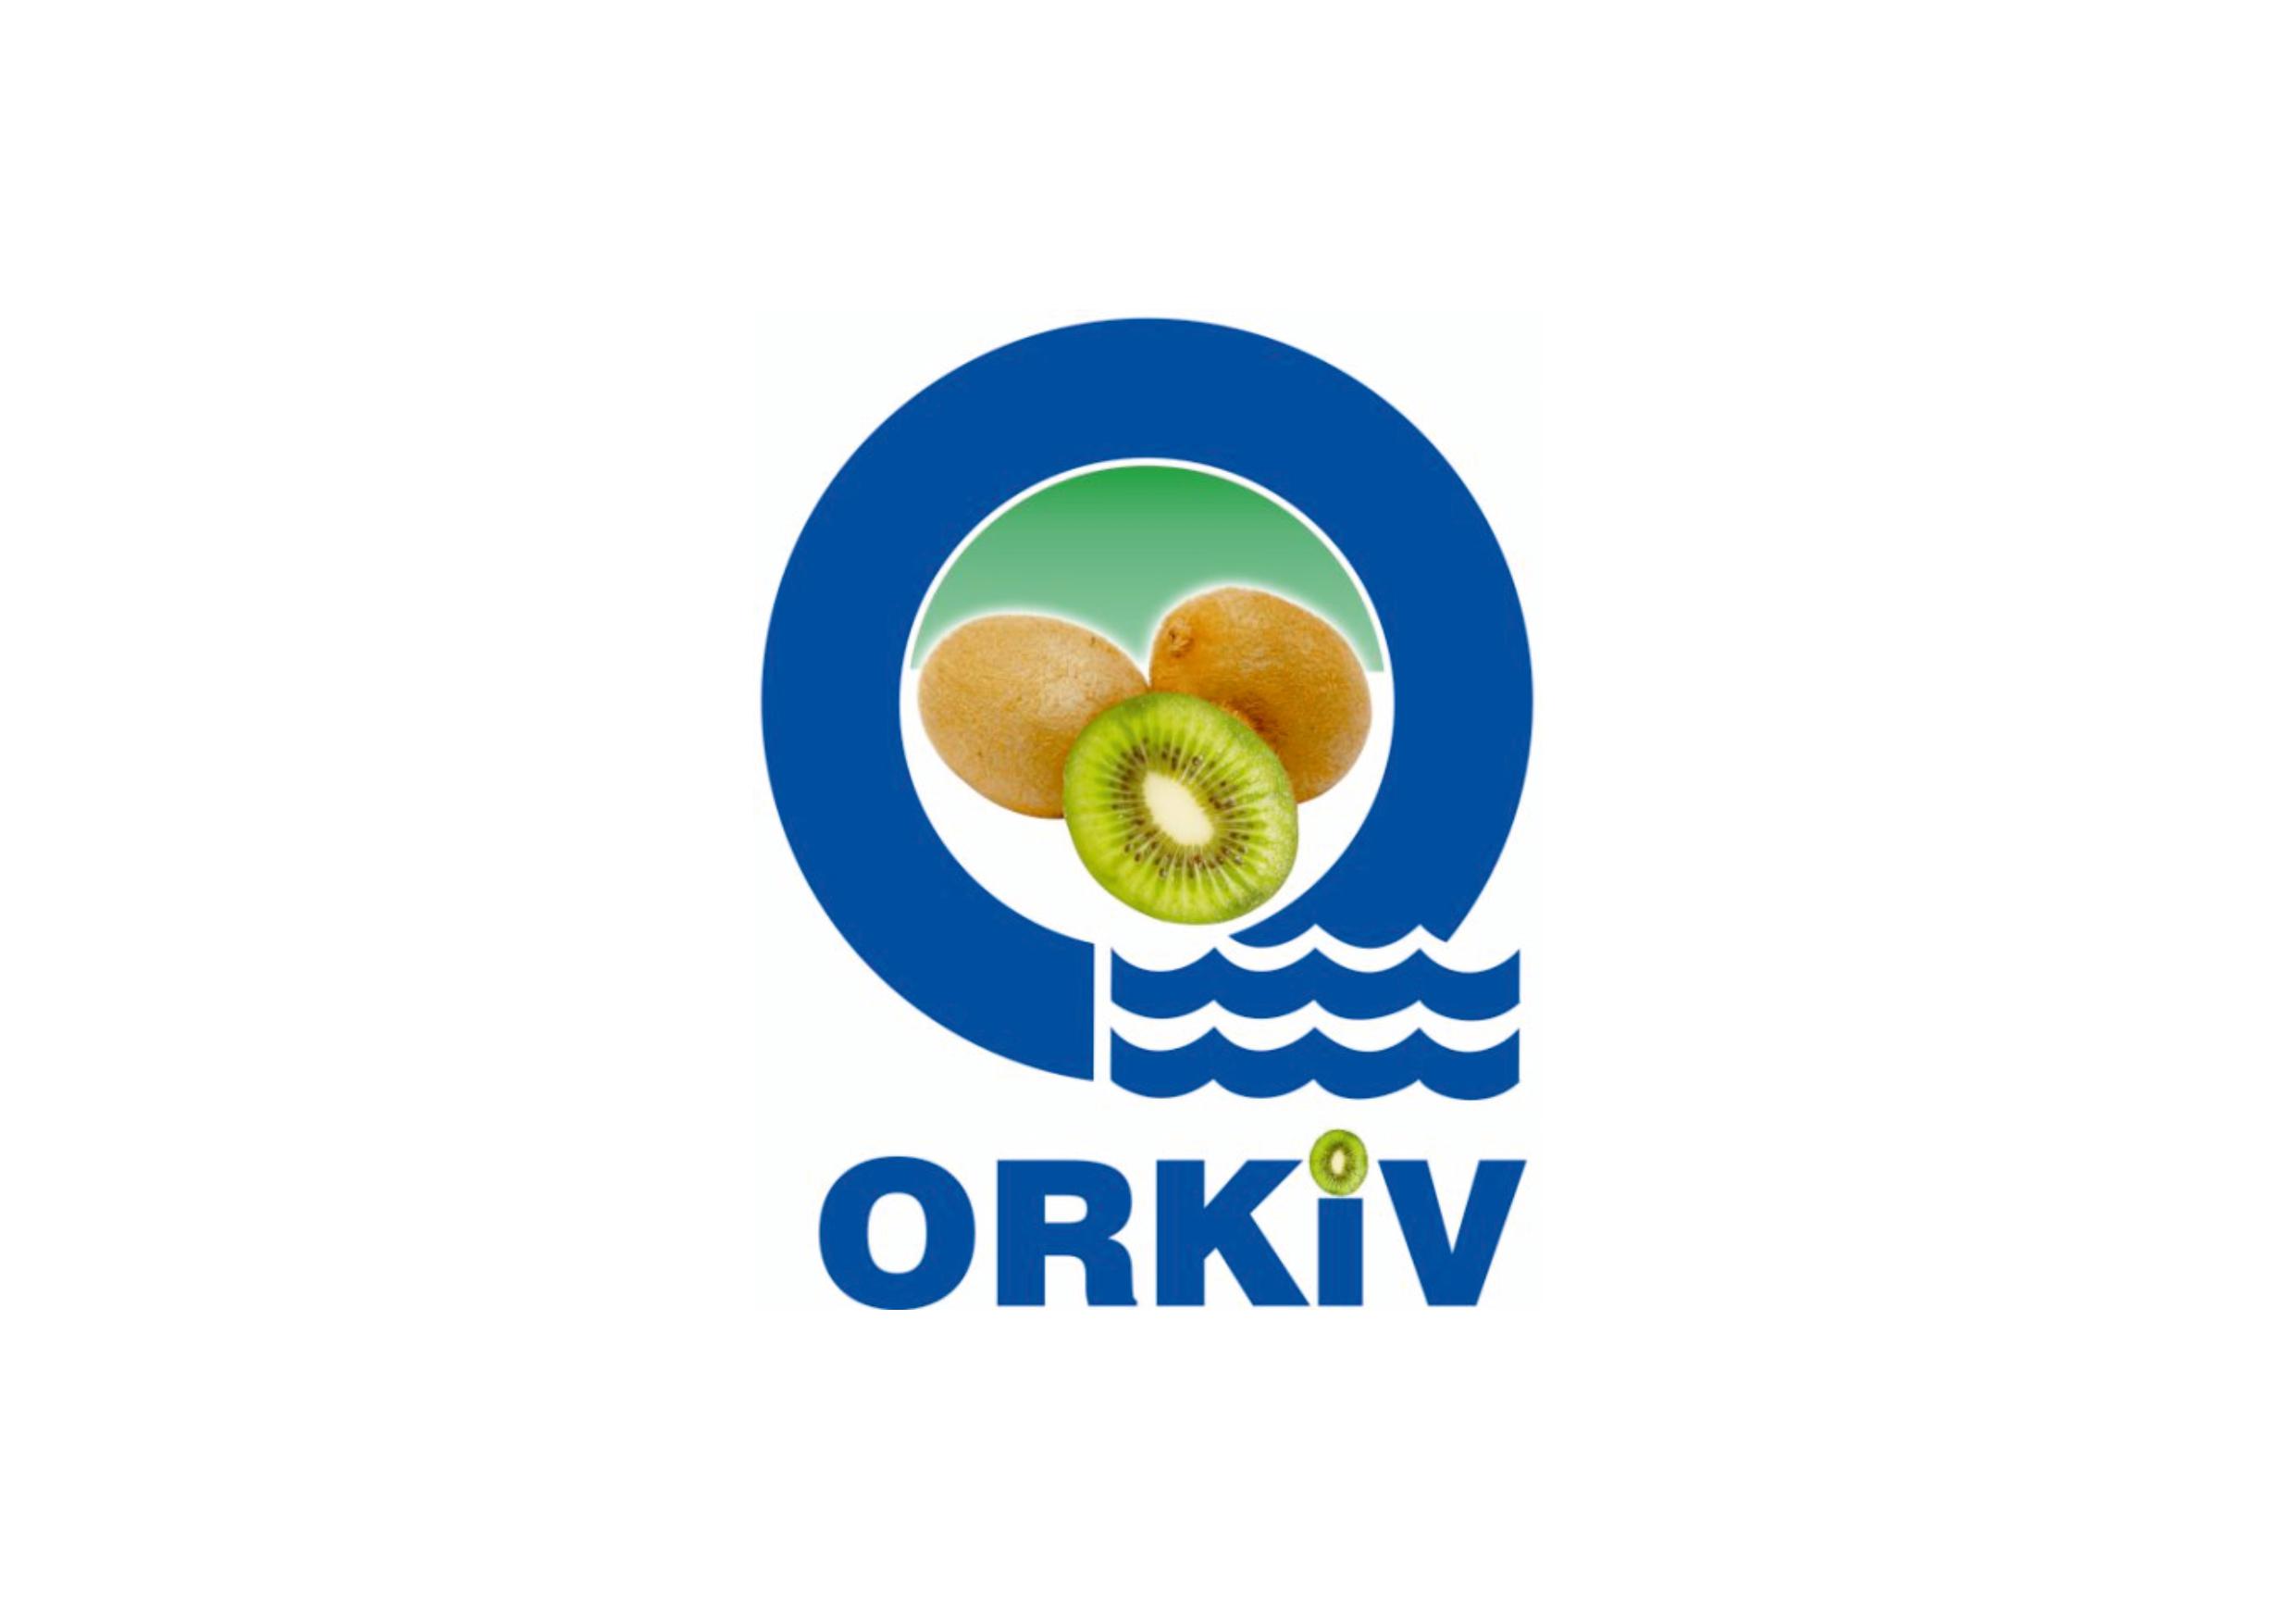 Ordu Kivi - Orkiv